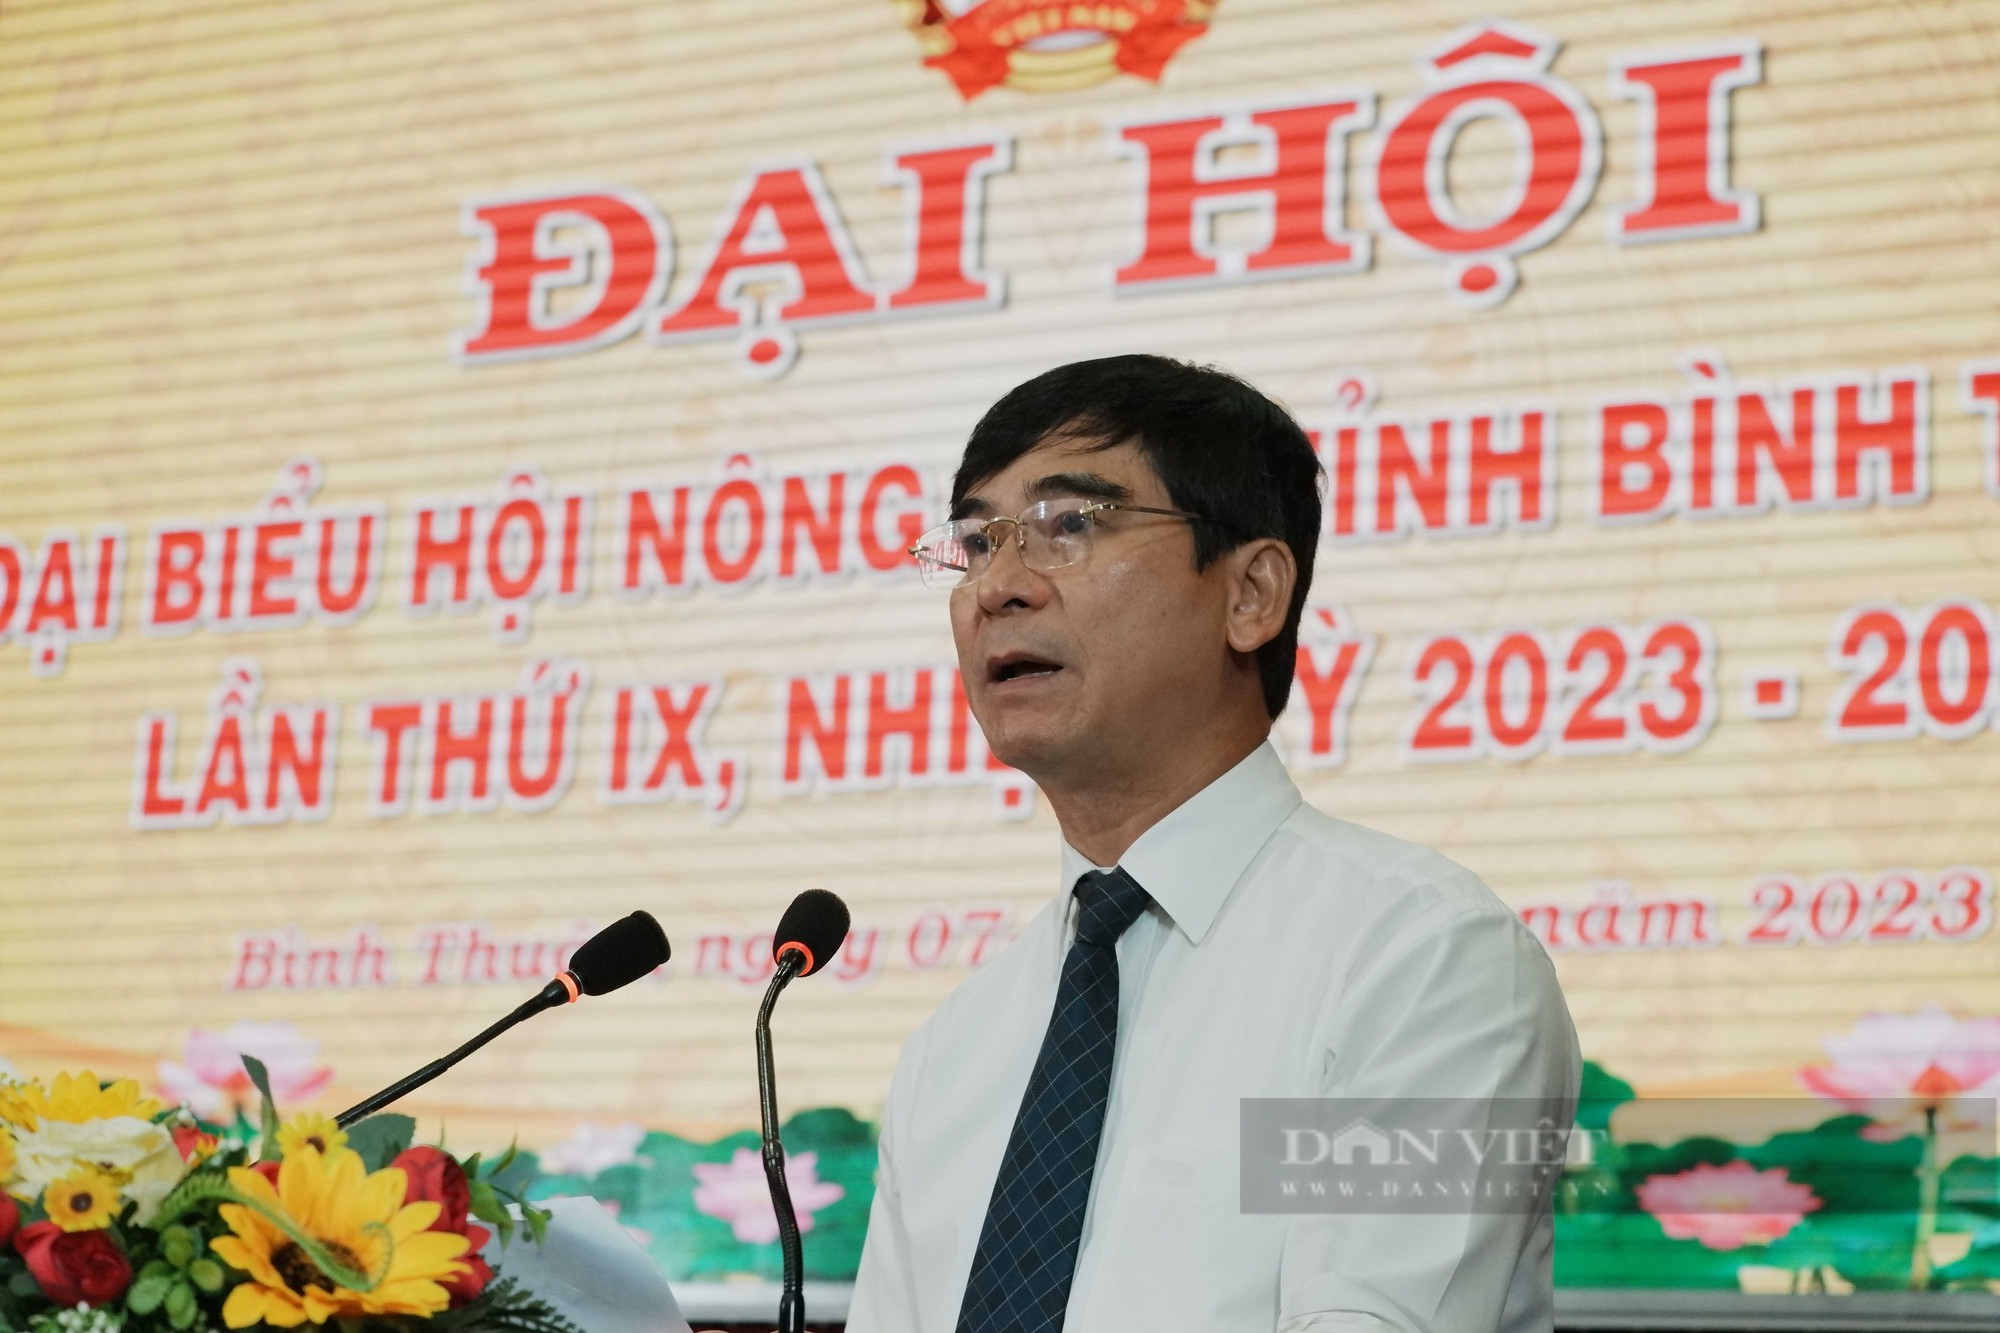 Bài phát biểu của Bí thư Tỉnh ủy tại Đại hội đại biểu Hội Nông dân tỉnh Bình Thuận nhiệm kỳ 2023 - 2028 - Ảnh 2.